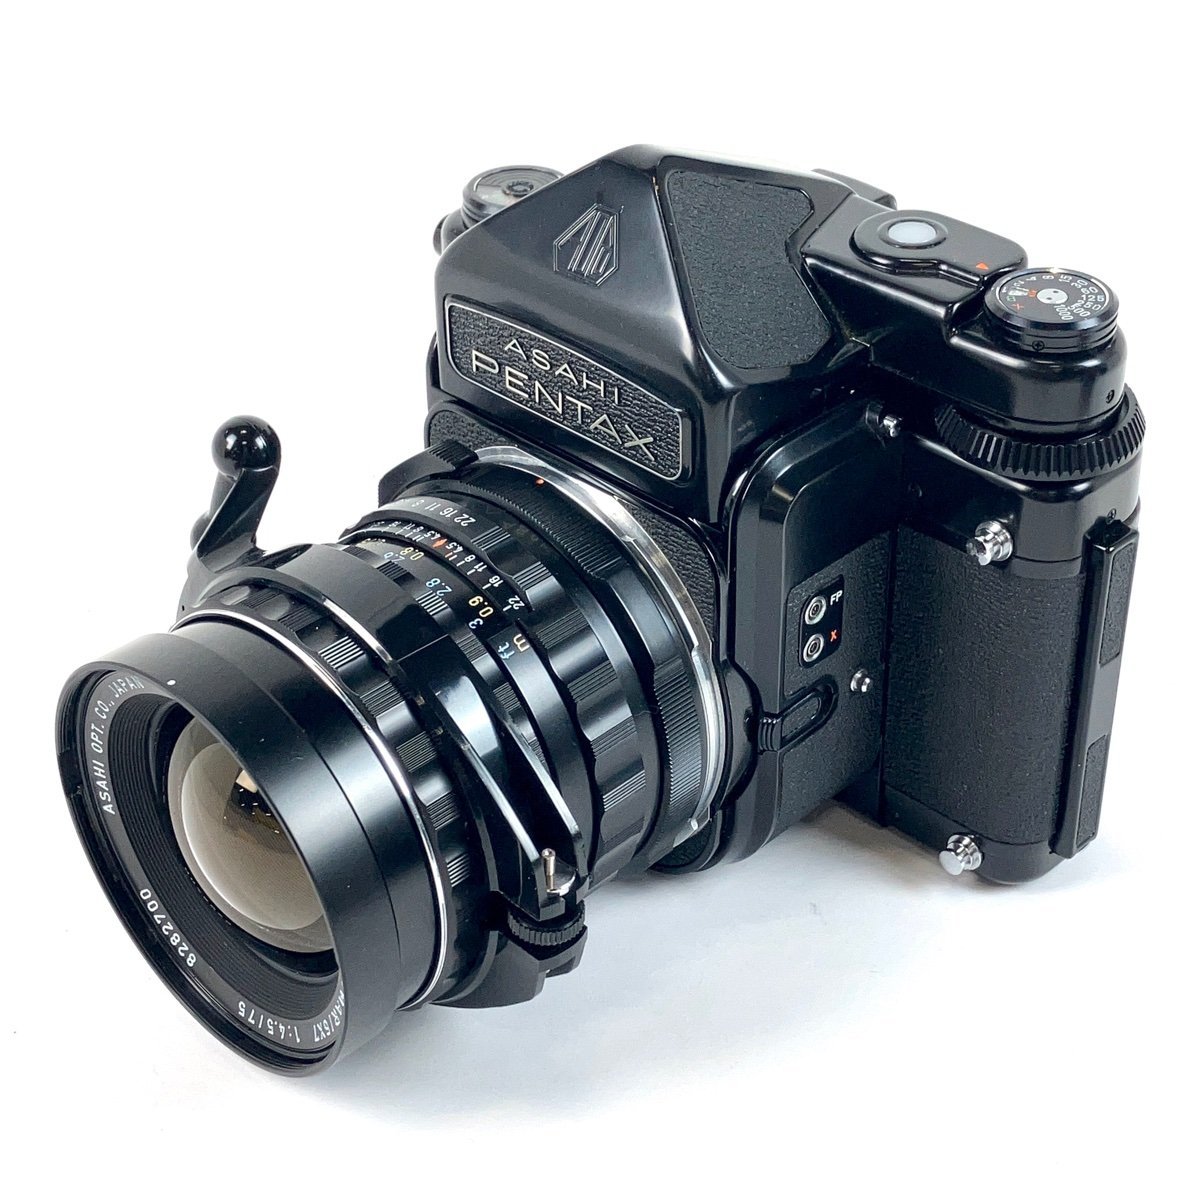 ペンタックス PENTAX 6x7 TTL + TAKUMAR 75mm F4.5 67 バケペン 中判カメラ 【中古】_バイセル 31062_1